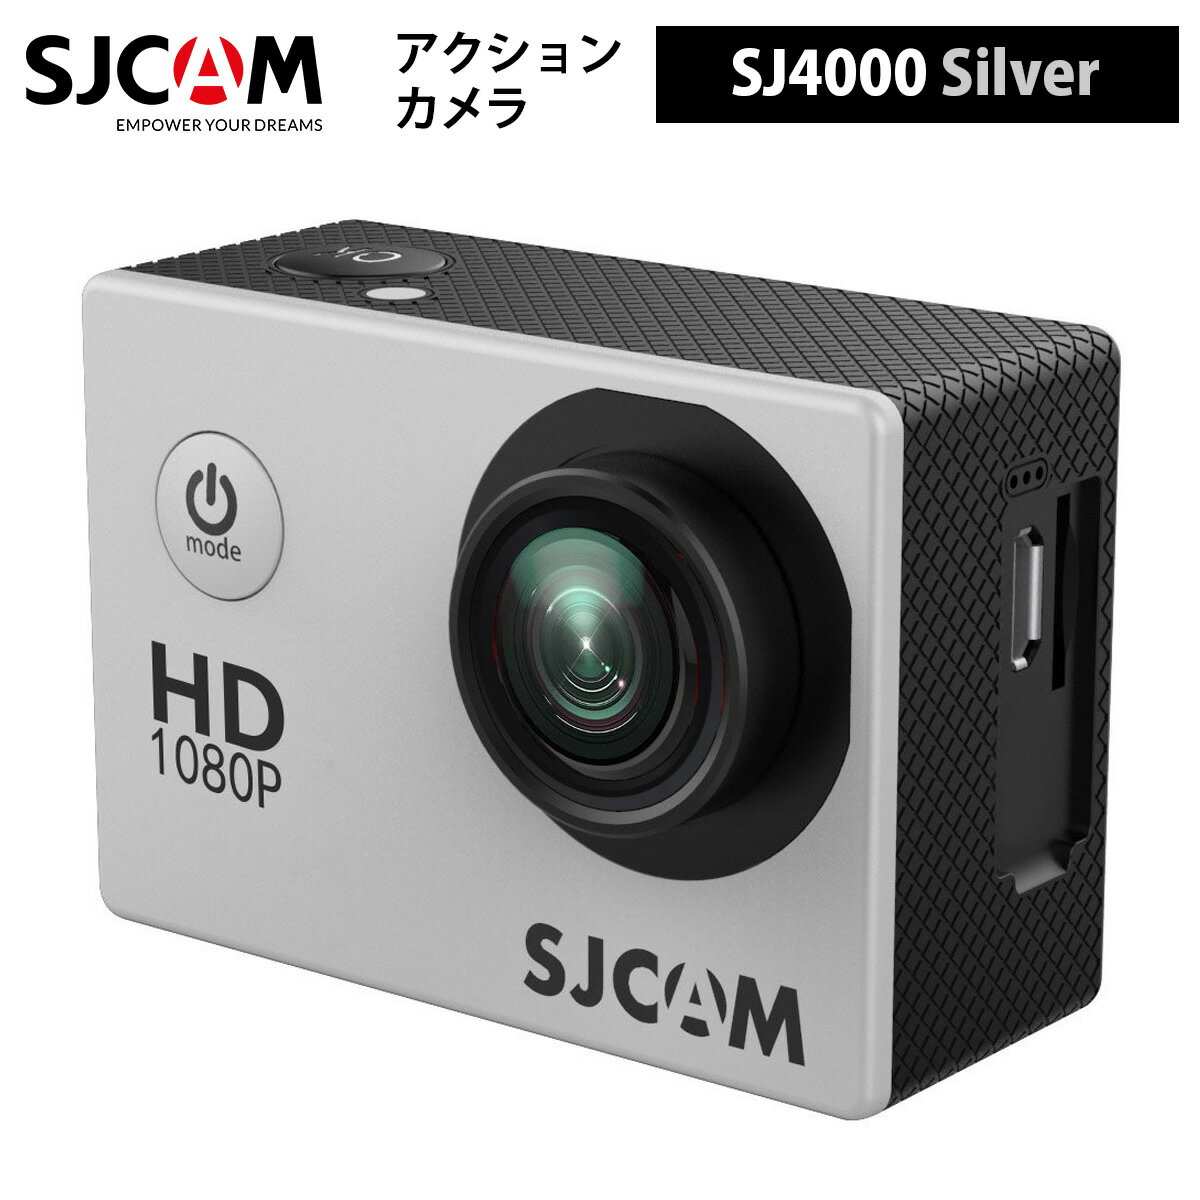 SJCAM 【正規輸入品】 アクションカメラ SJ4000（色：シルバー）4MPセンサー 170°ワイド視野角 21.5インチLCD 防水ケース付属 水中撮影 カラーバリエーション ポケットサイズ 軽量 12メガピクセルセンサー 1080Pビデオ記録 1920×1080 フルHD解像度